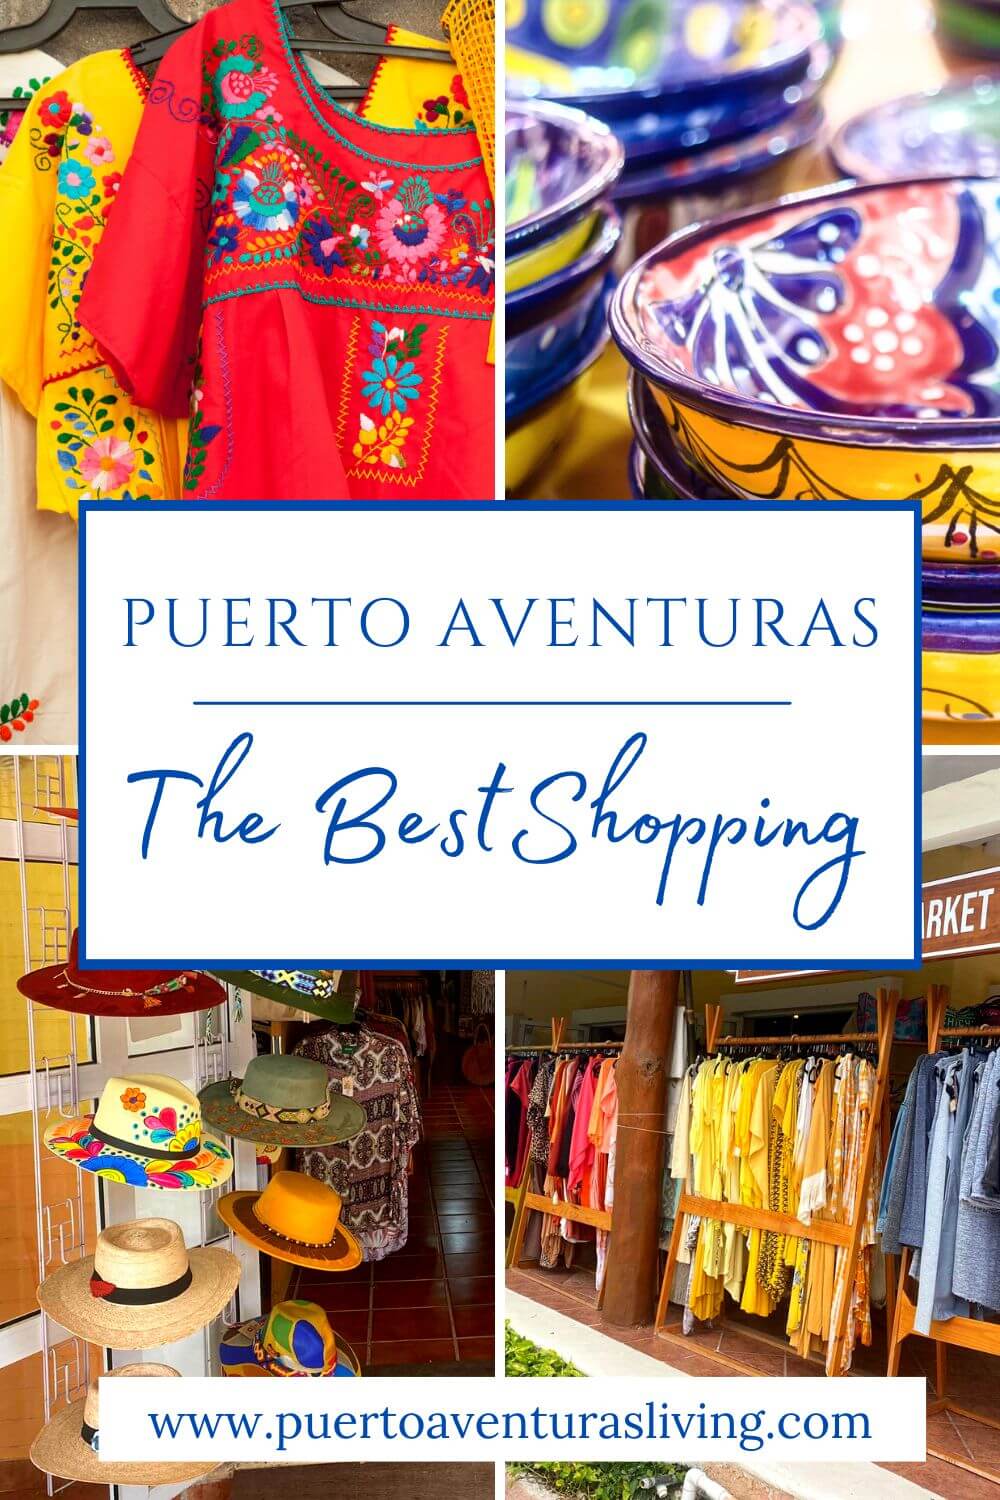 Things to buy in Puerto Aventuras